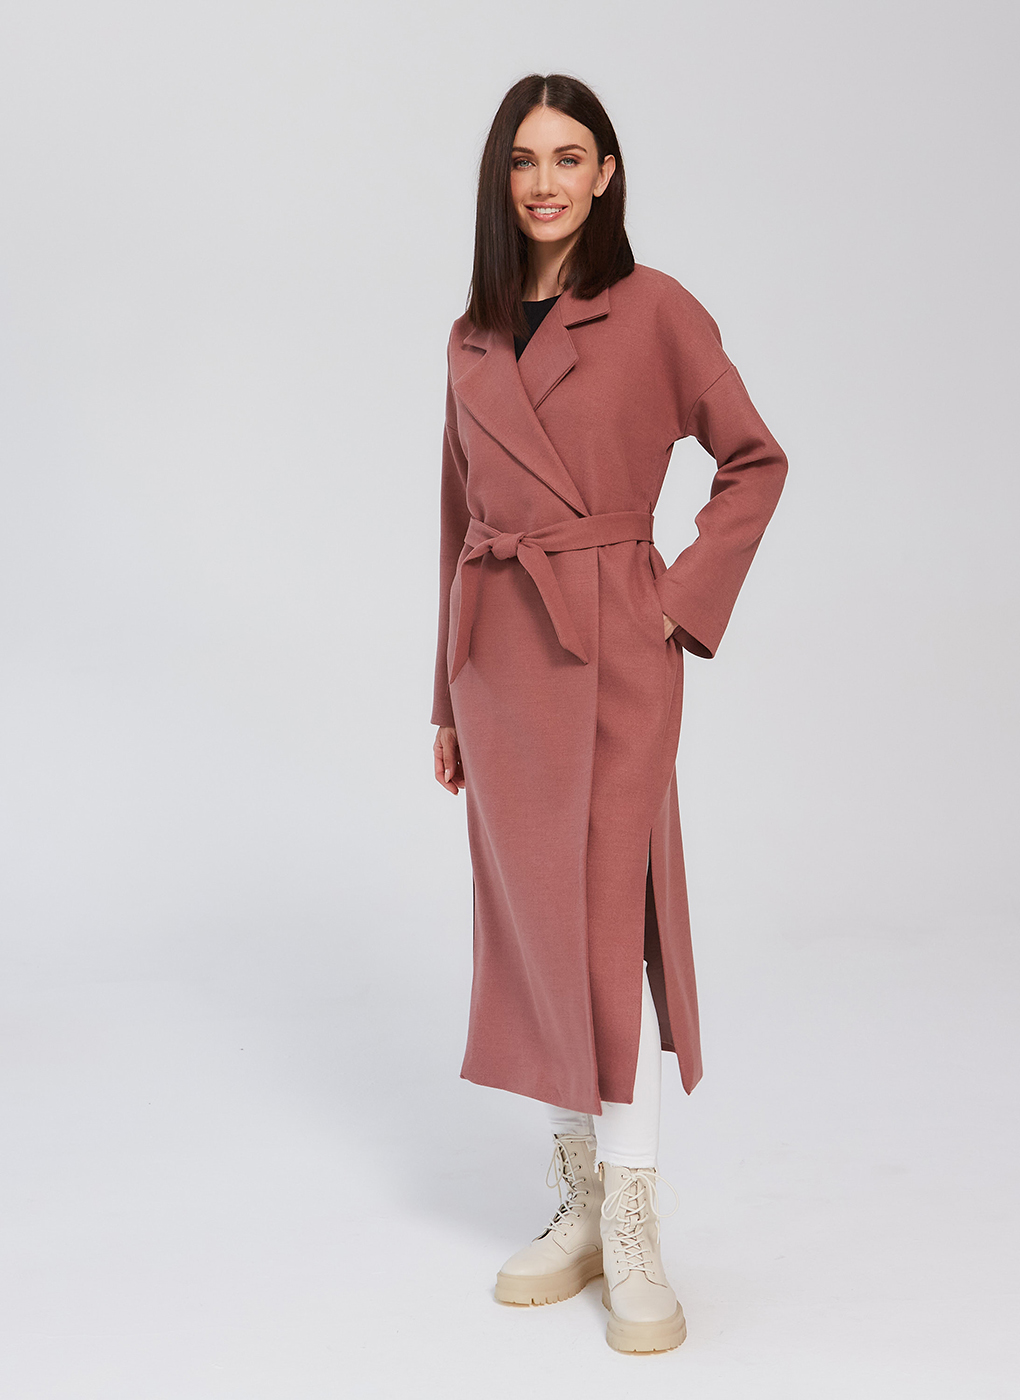 Пальто женское Giulia Rosetti 56207 розовое 46 RU